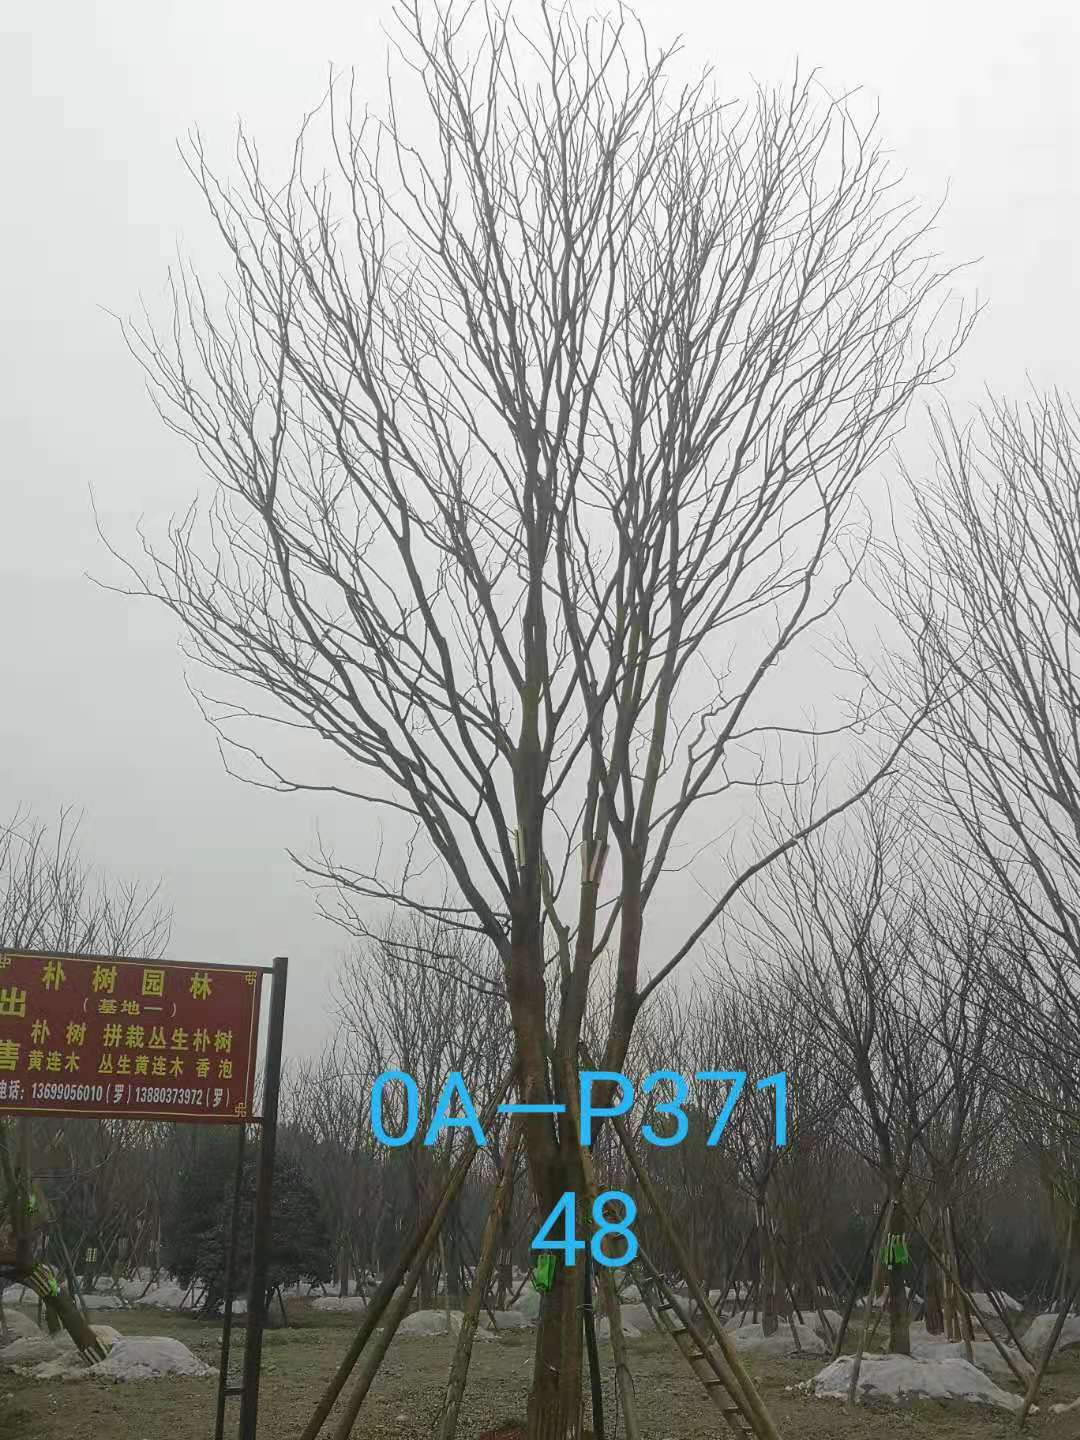 四川省苗木基地直销的43-48公分朴树-2021年最新价格